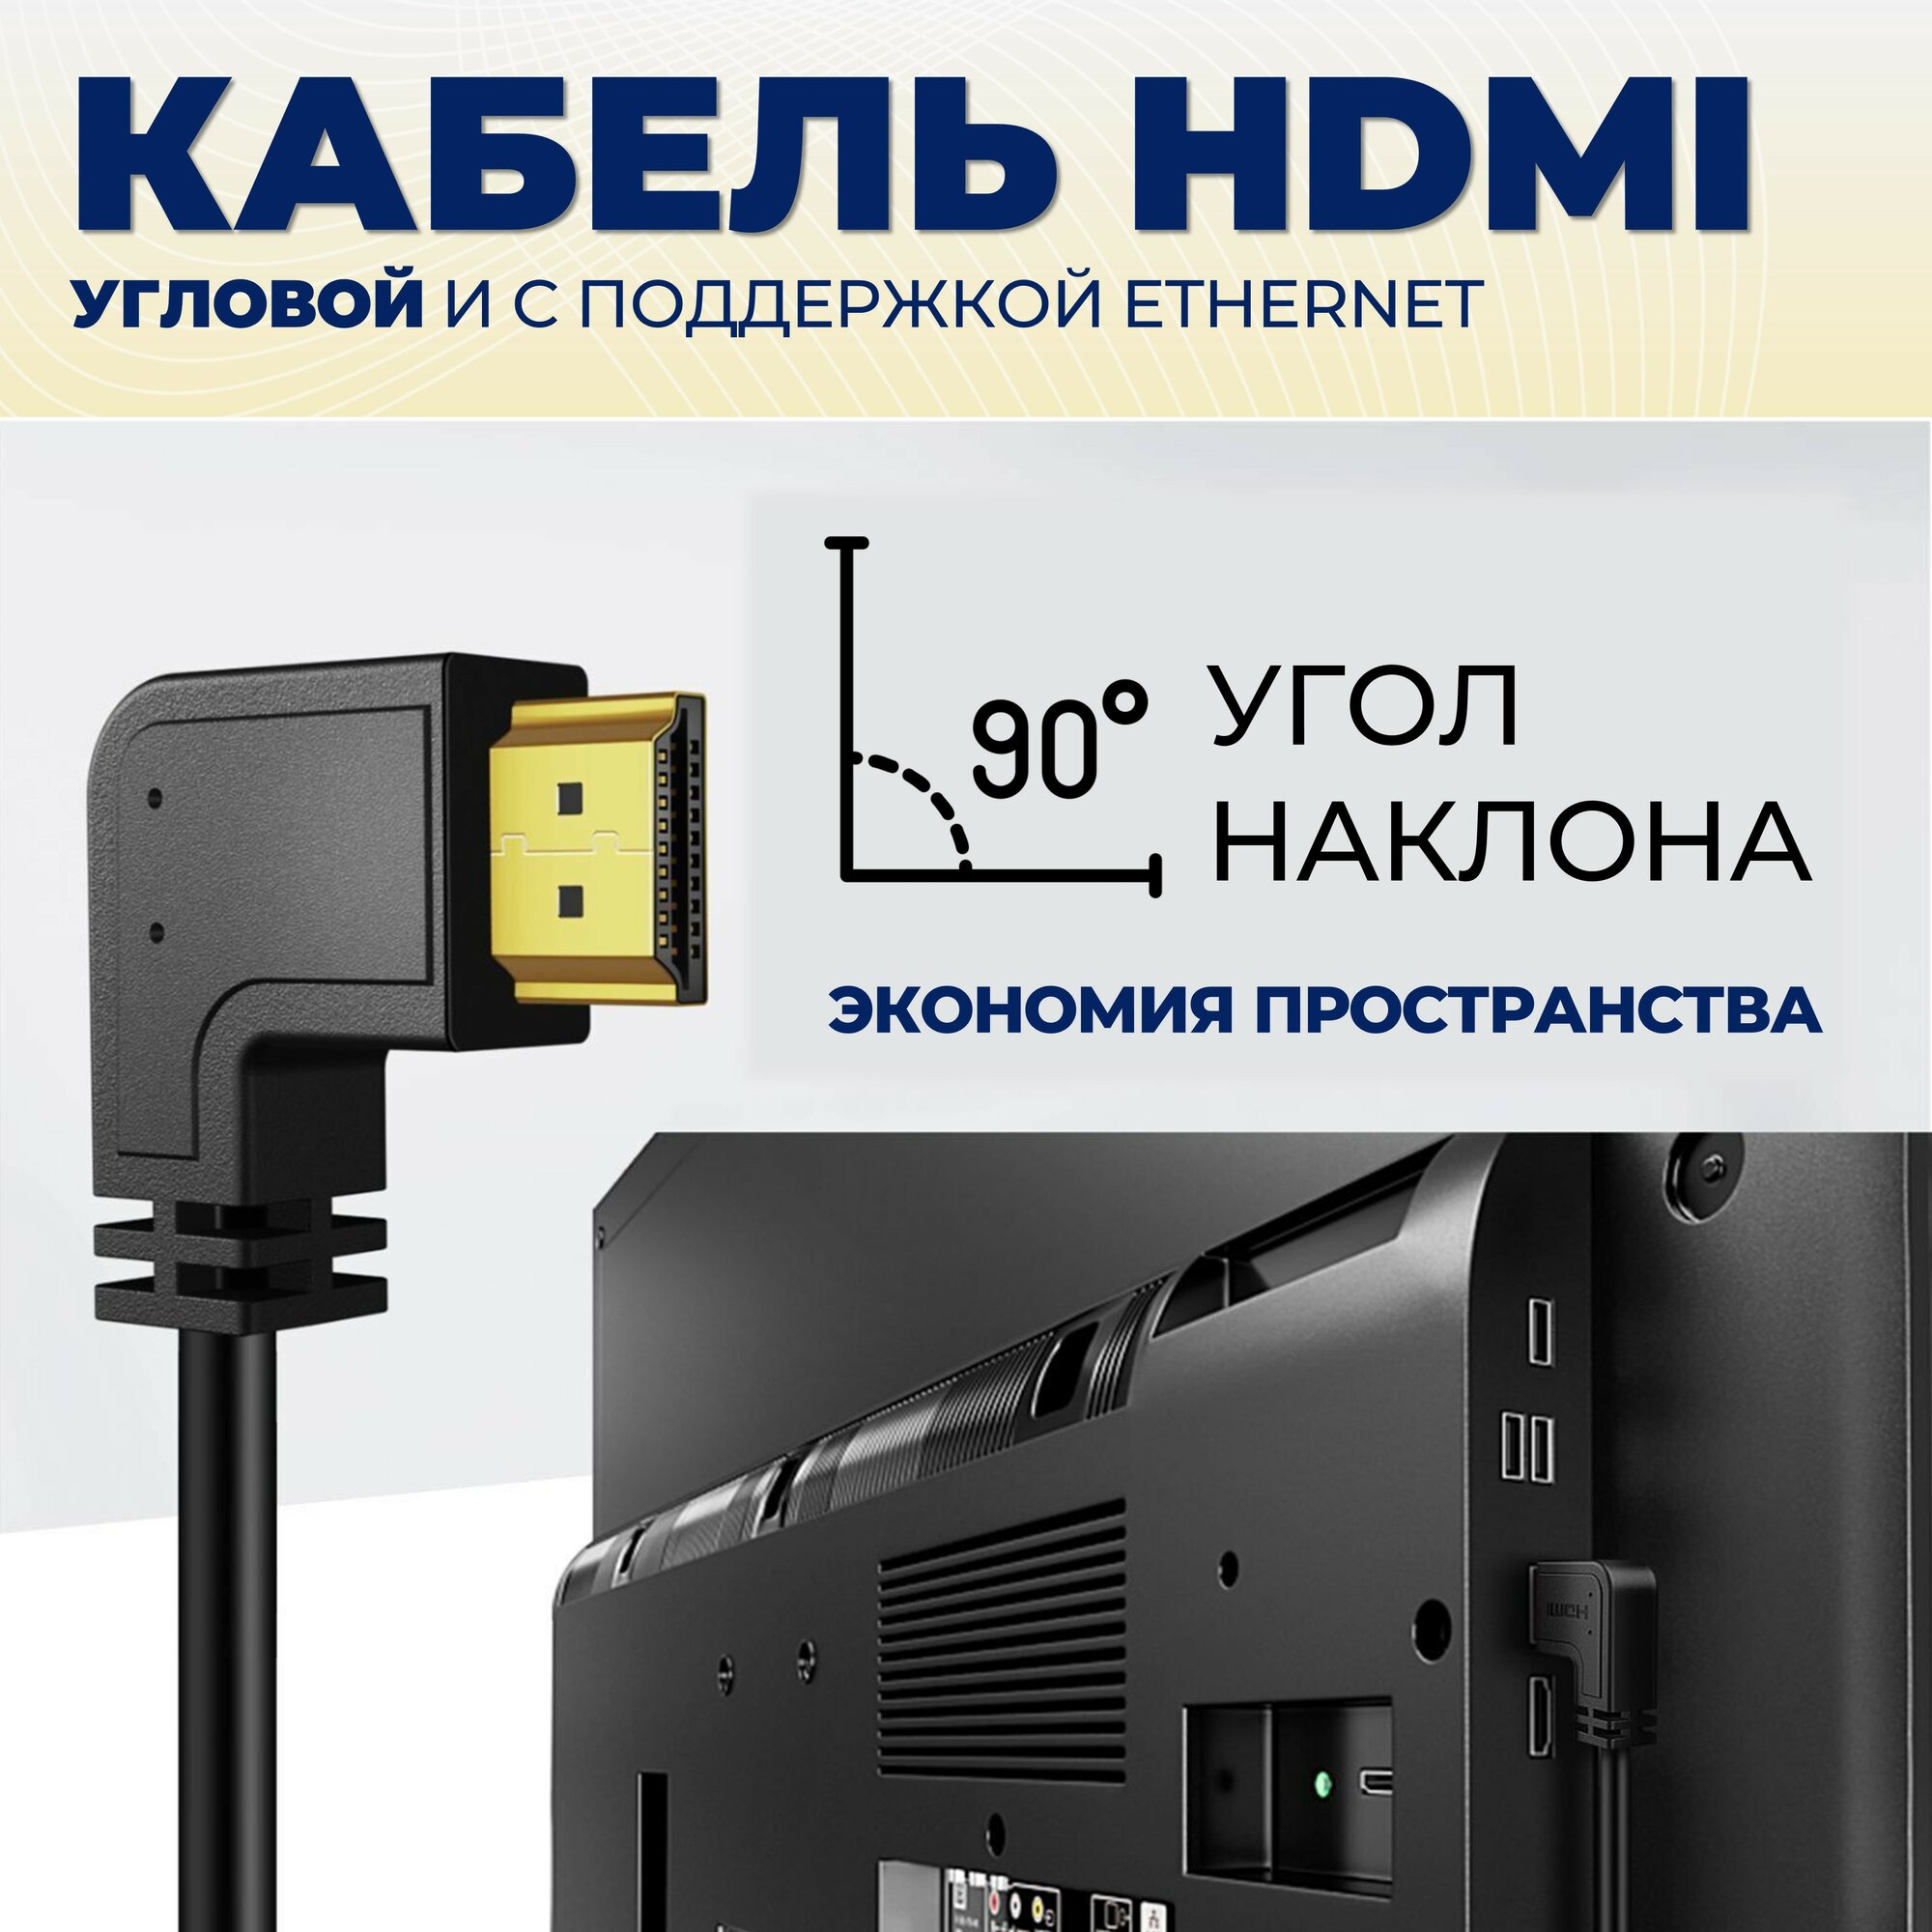 Кабель HDMI, прямой/угловой, 1.5м с поддержкой ethernet